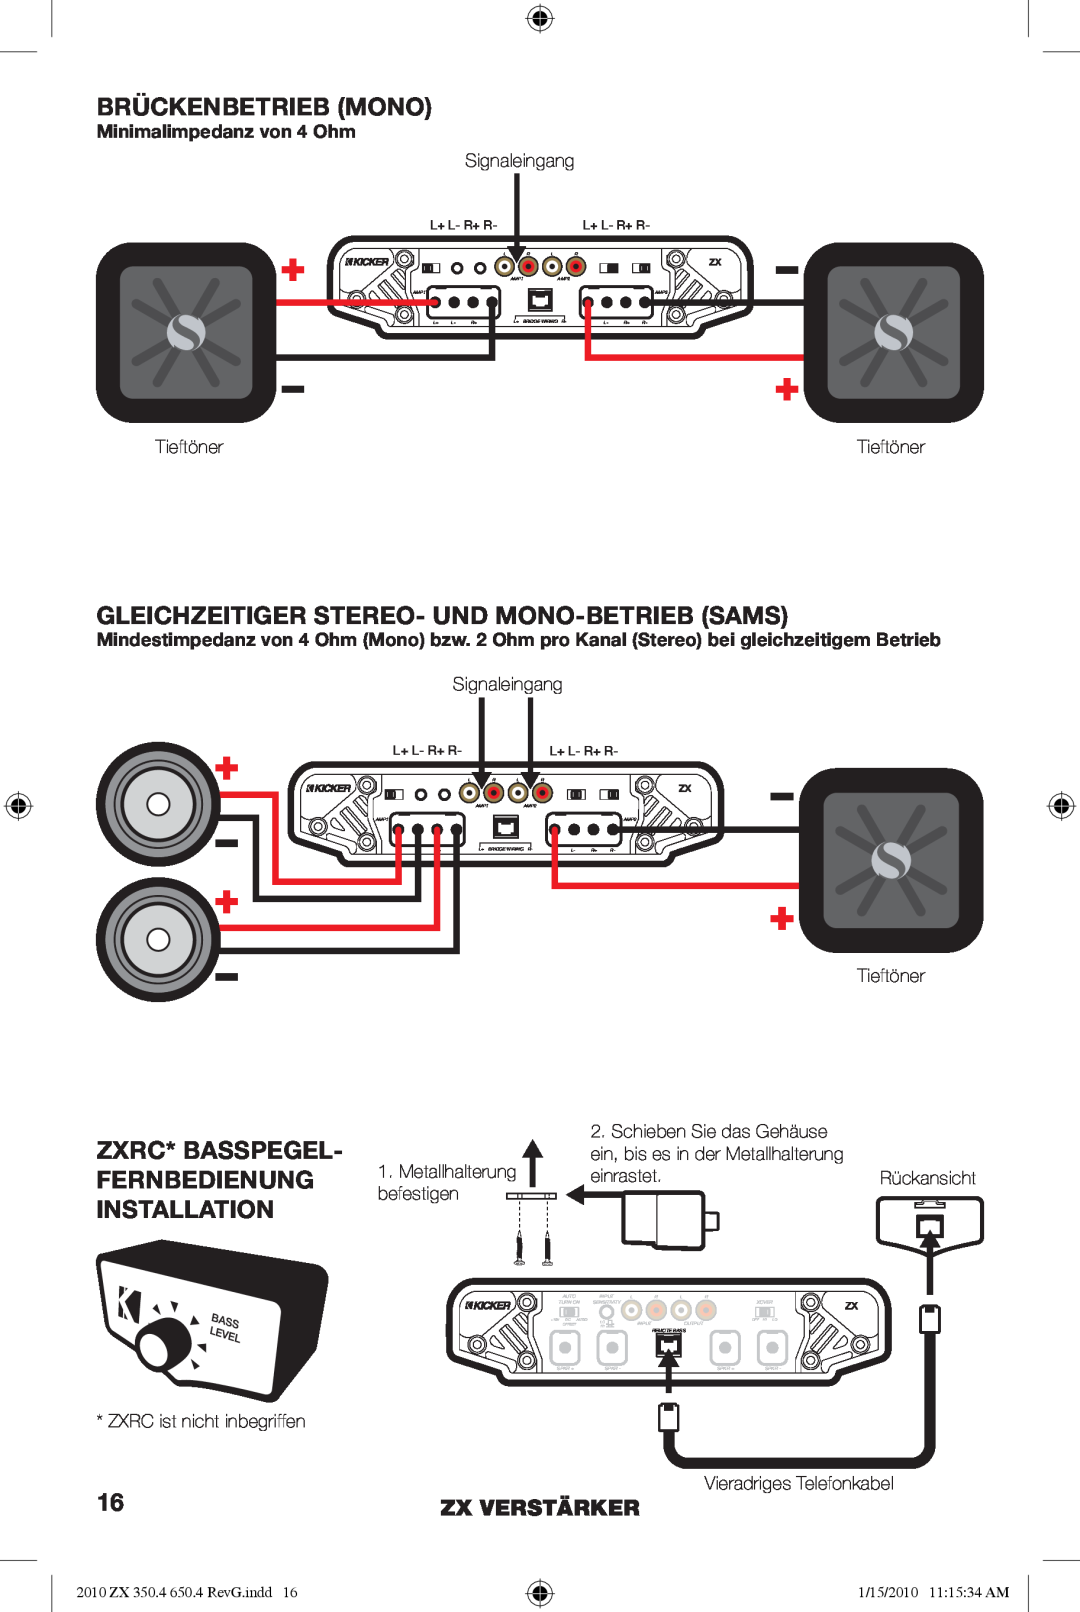 Kicker ZX650.4 Brückenbetrieb Mono, Gleichzeitiger Stereo- Und Mono-Betriebsams, Minimalimpedanz von 4 Ohm, Zx Verstärker 